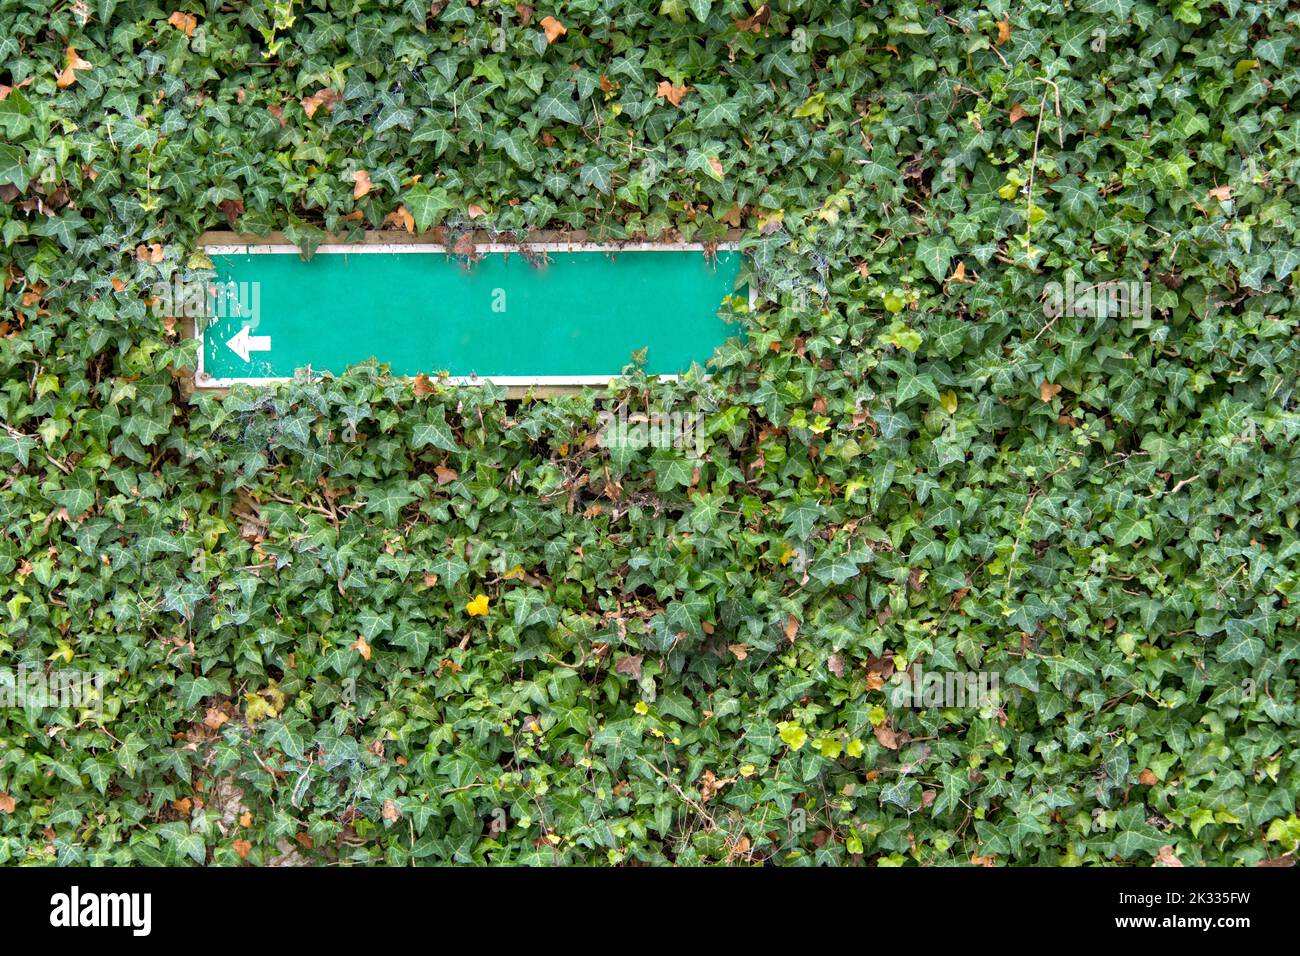 parete sovracoltivata con cartello verde che mostra una freccia bianca accanto a piante di arrampicata parzialmente supercoltivate come un suggerimento di scrittura Foto Stock